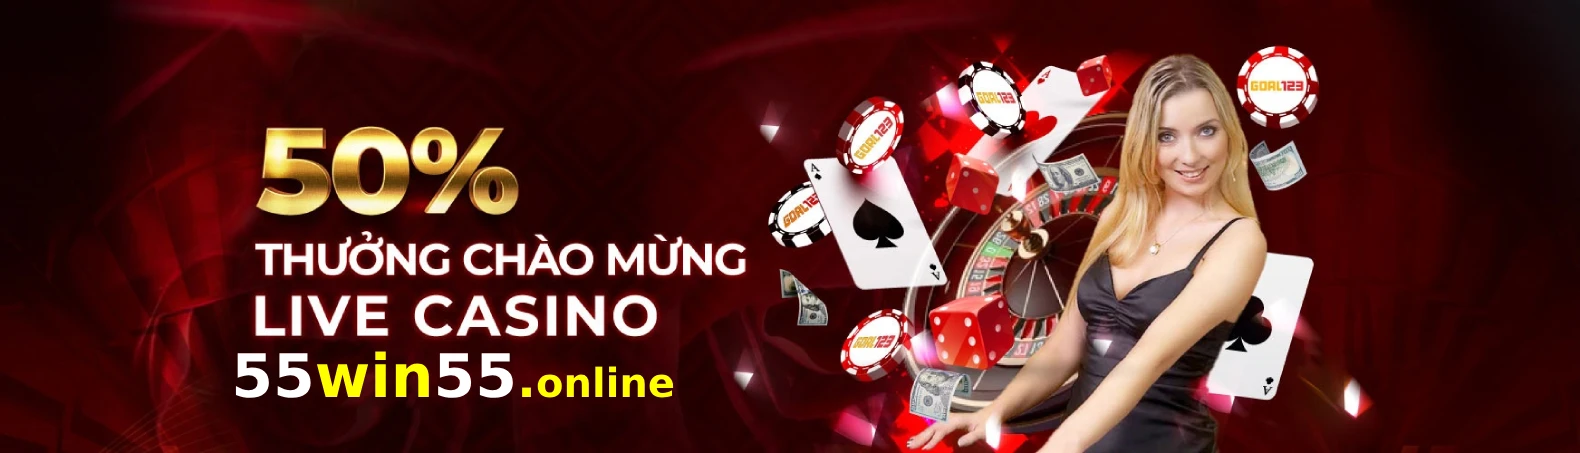 Banner Casino 55win55